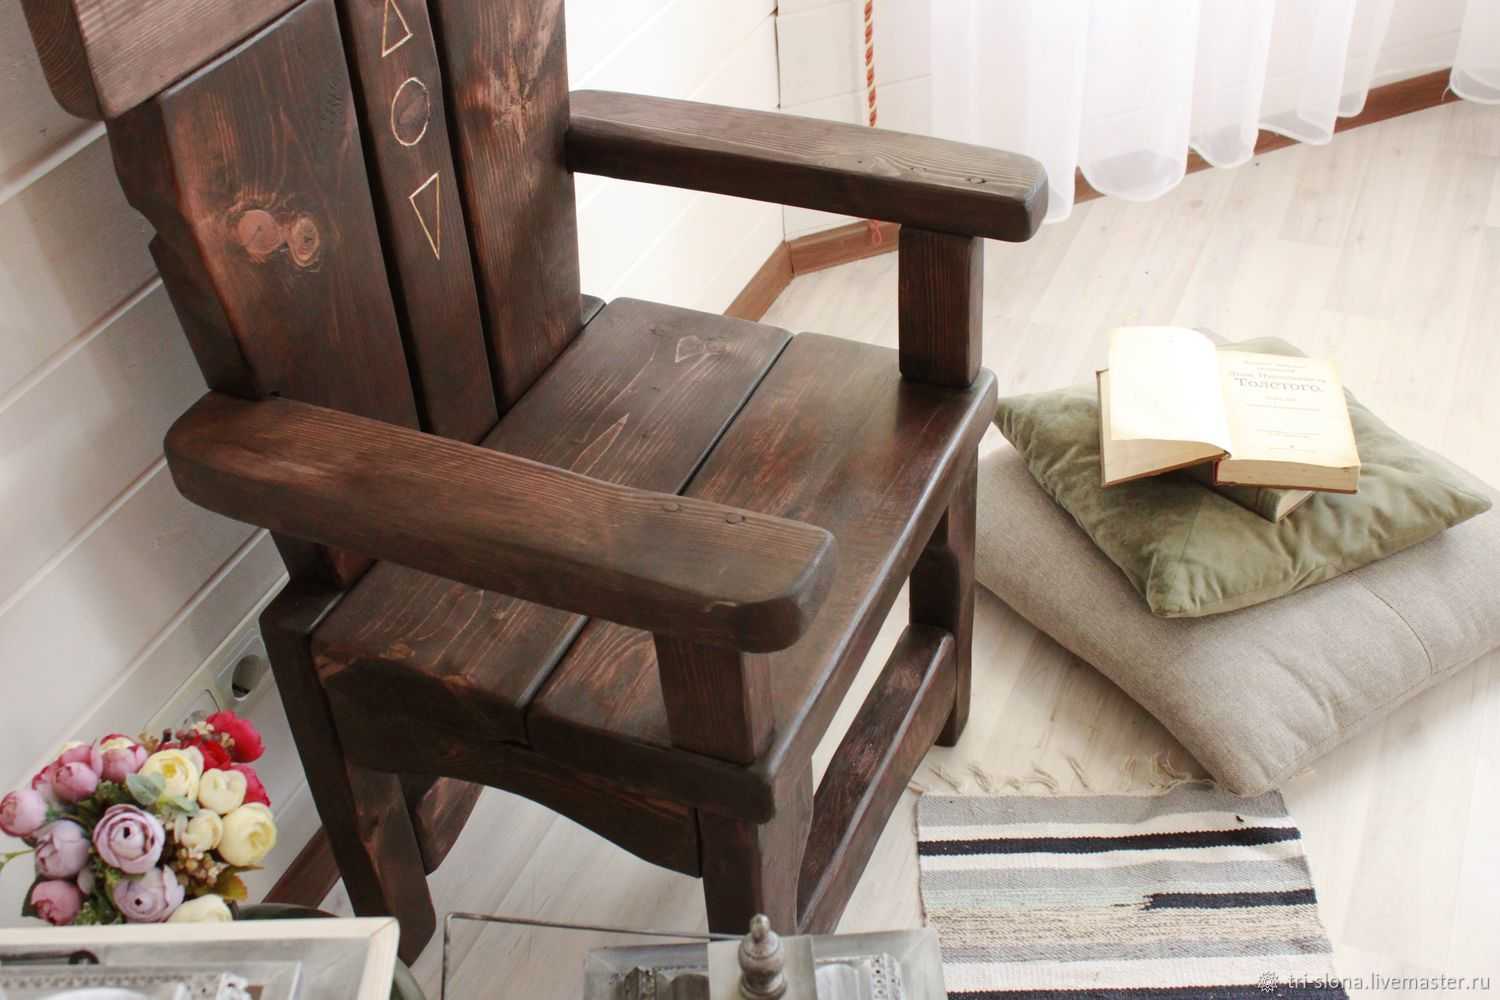 Читайте по ссылке об изготовлении каминного кресла своими руками Данное кресло из массива дерева с подлокотниками будет отличным местом отдыха